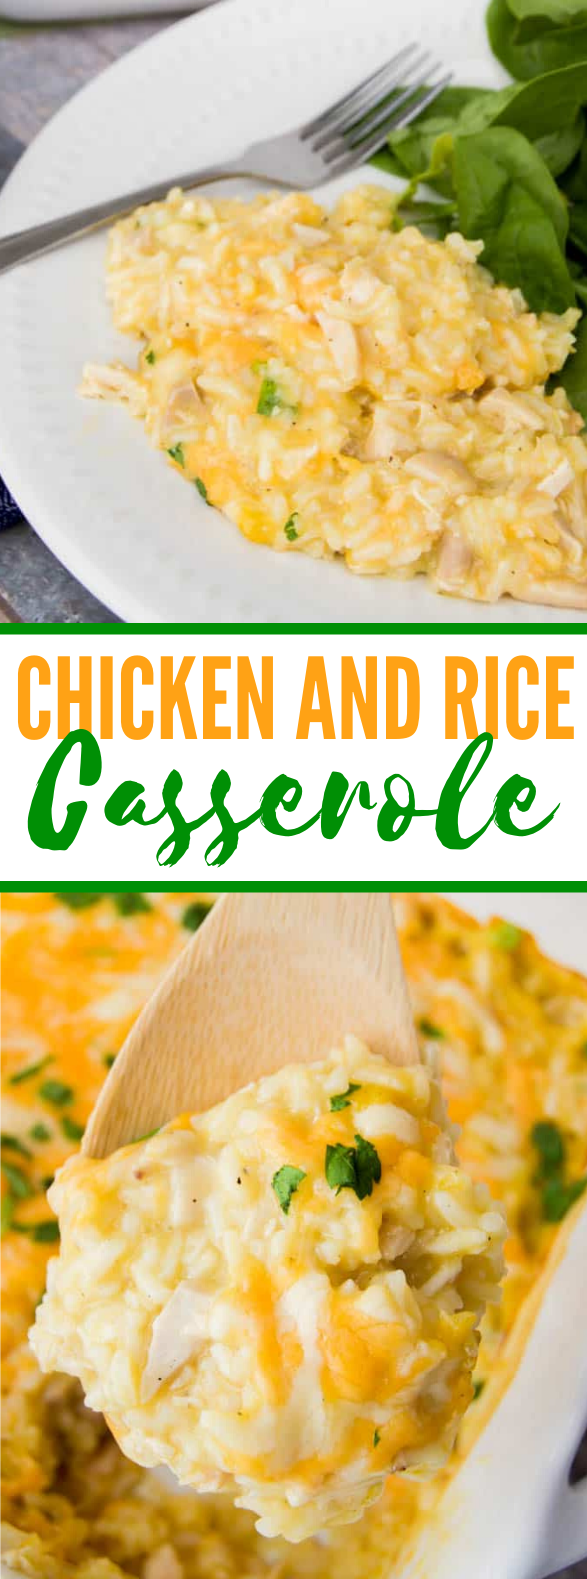 Chicken and Rice Casserole #dinner #favoriterecipe